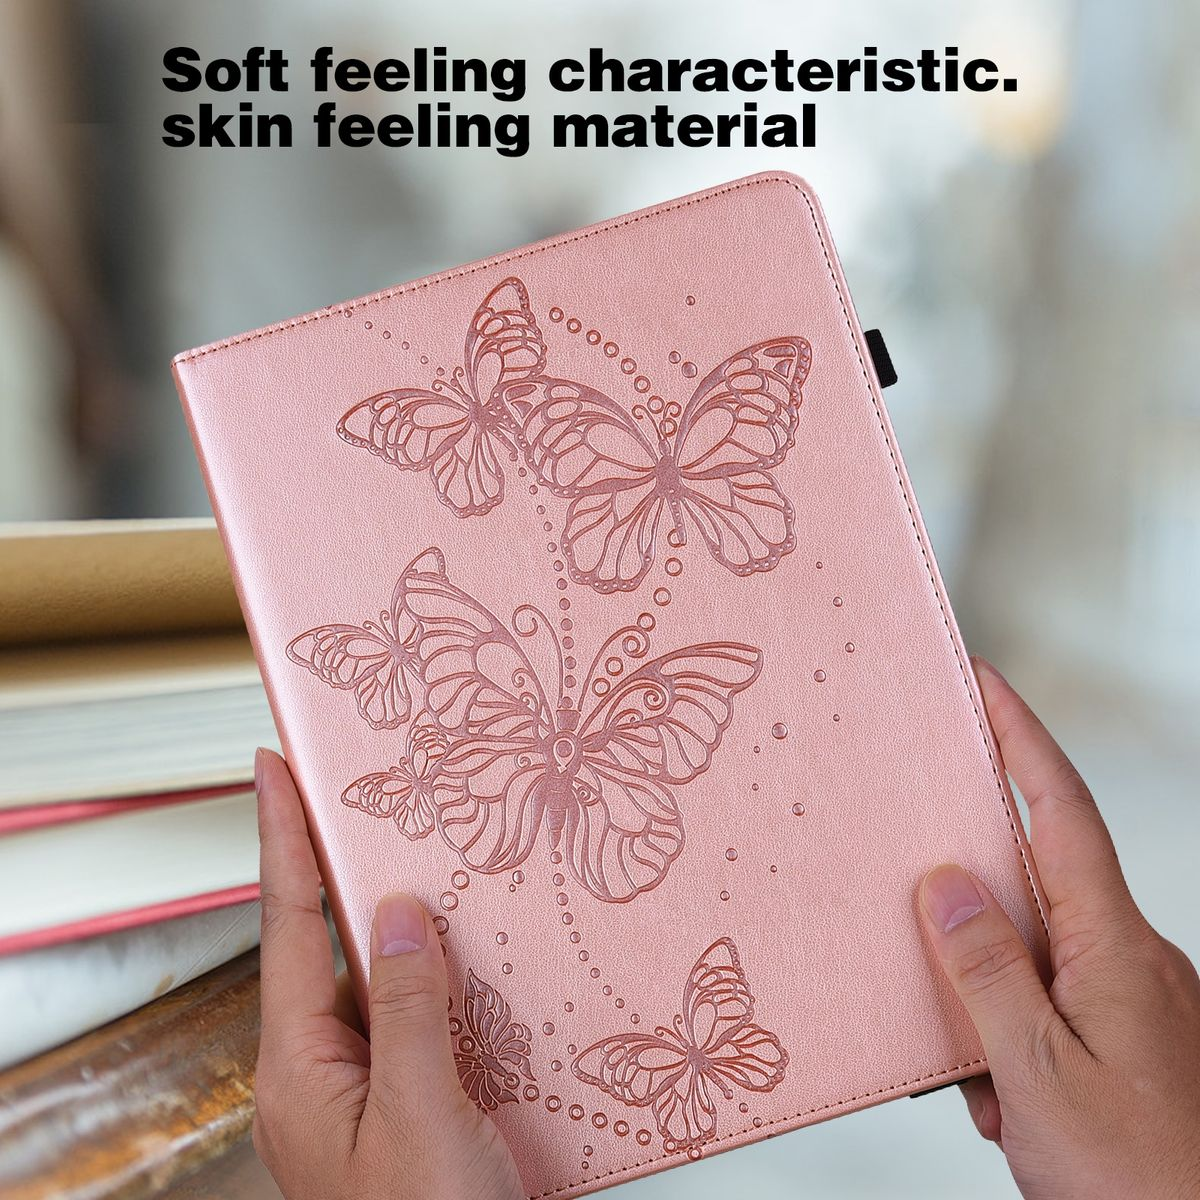 WIGENTO Aufstellbare Kunst-Leder Tasche Schmetterling Galaxy Tab Bookcover, Samsung, Pink Motiv, A9